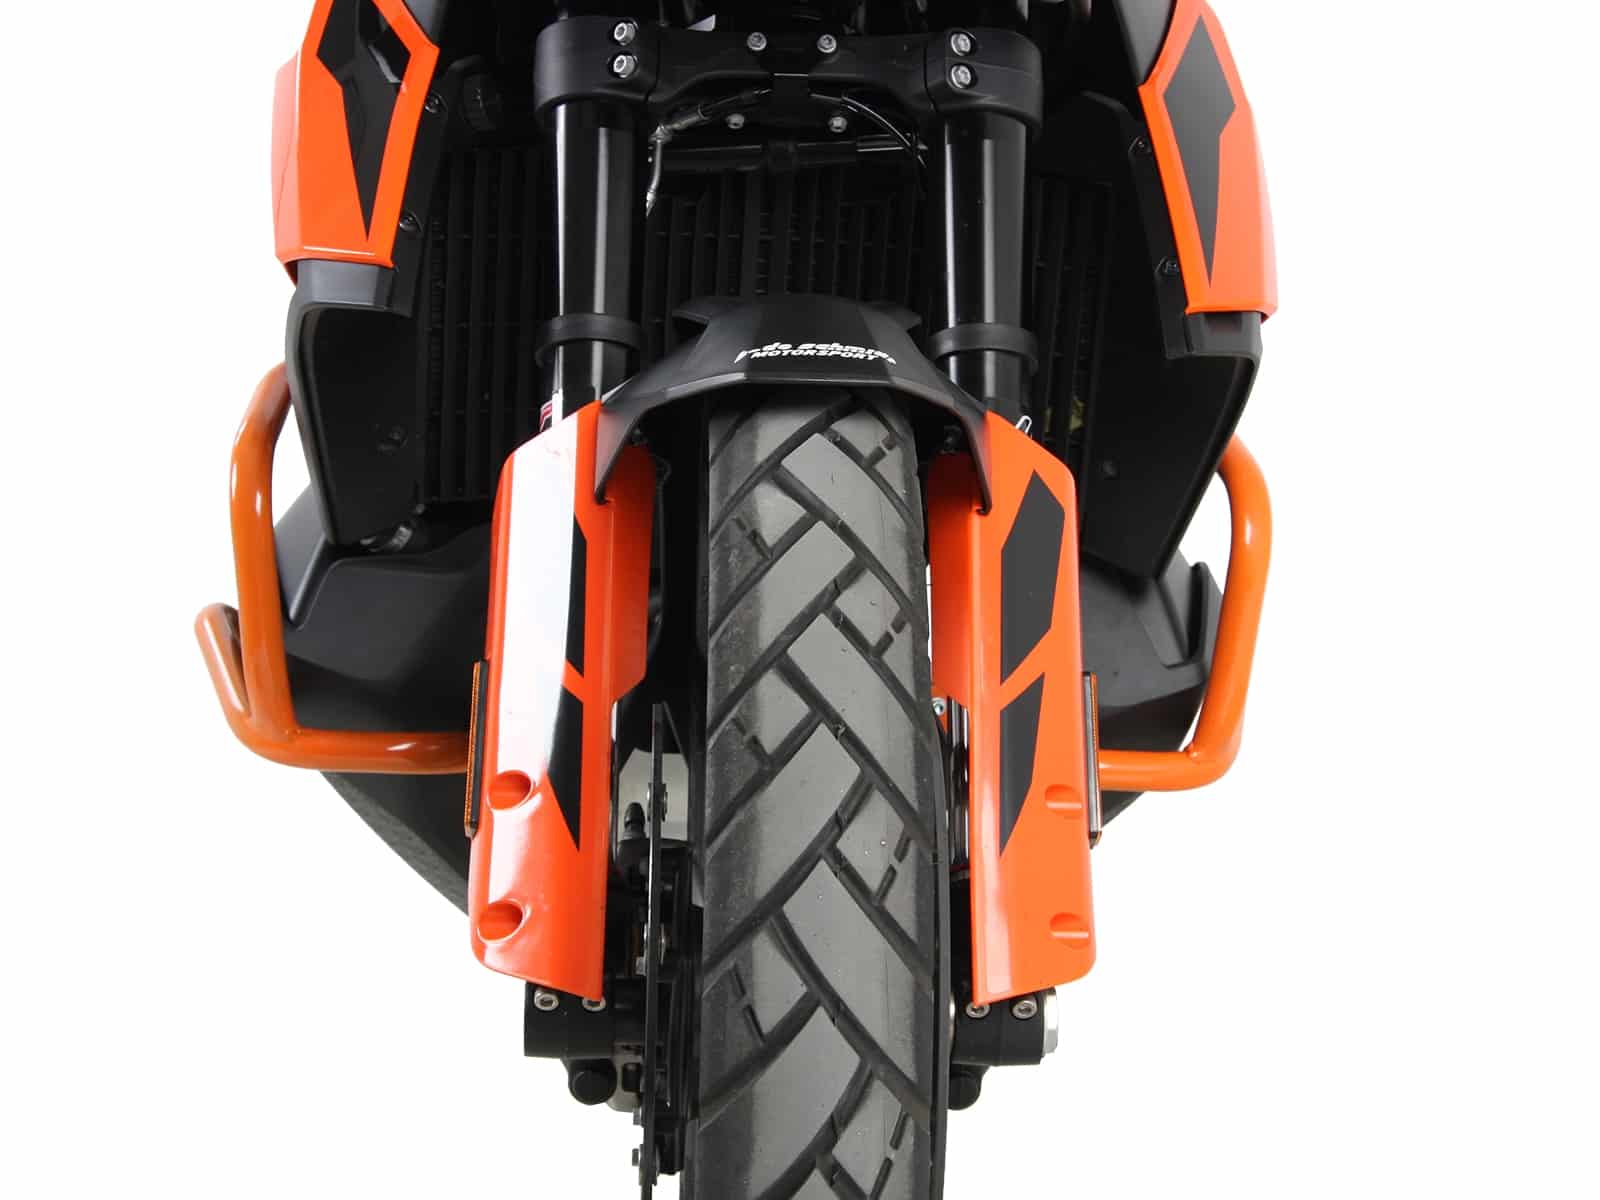 Engine protection bar orange for KTM 790 Adventure/R (2019-)